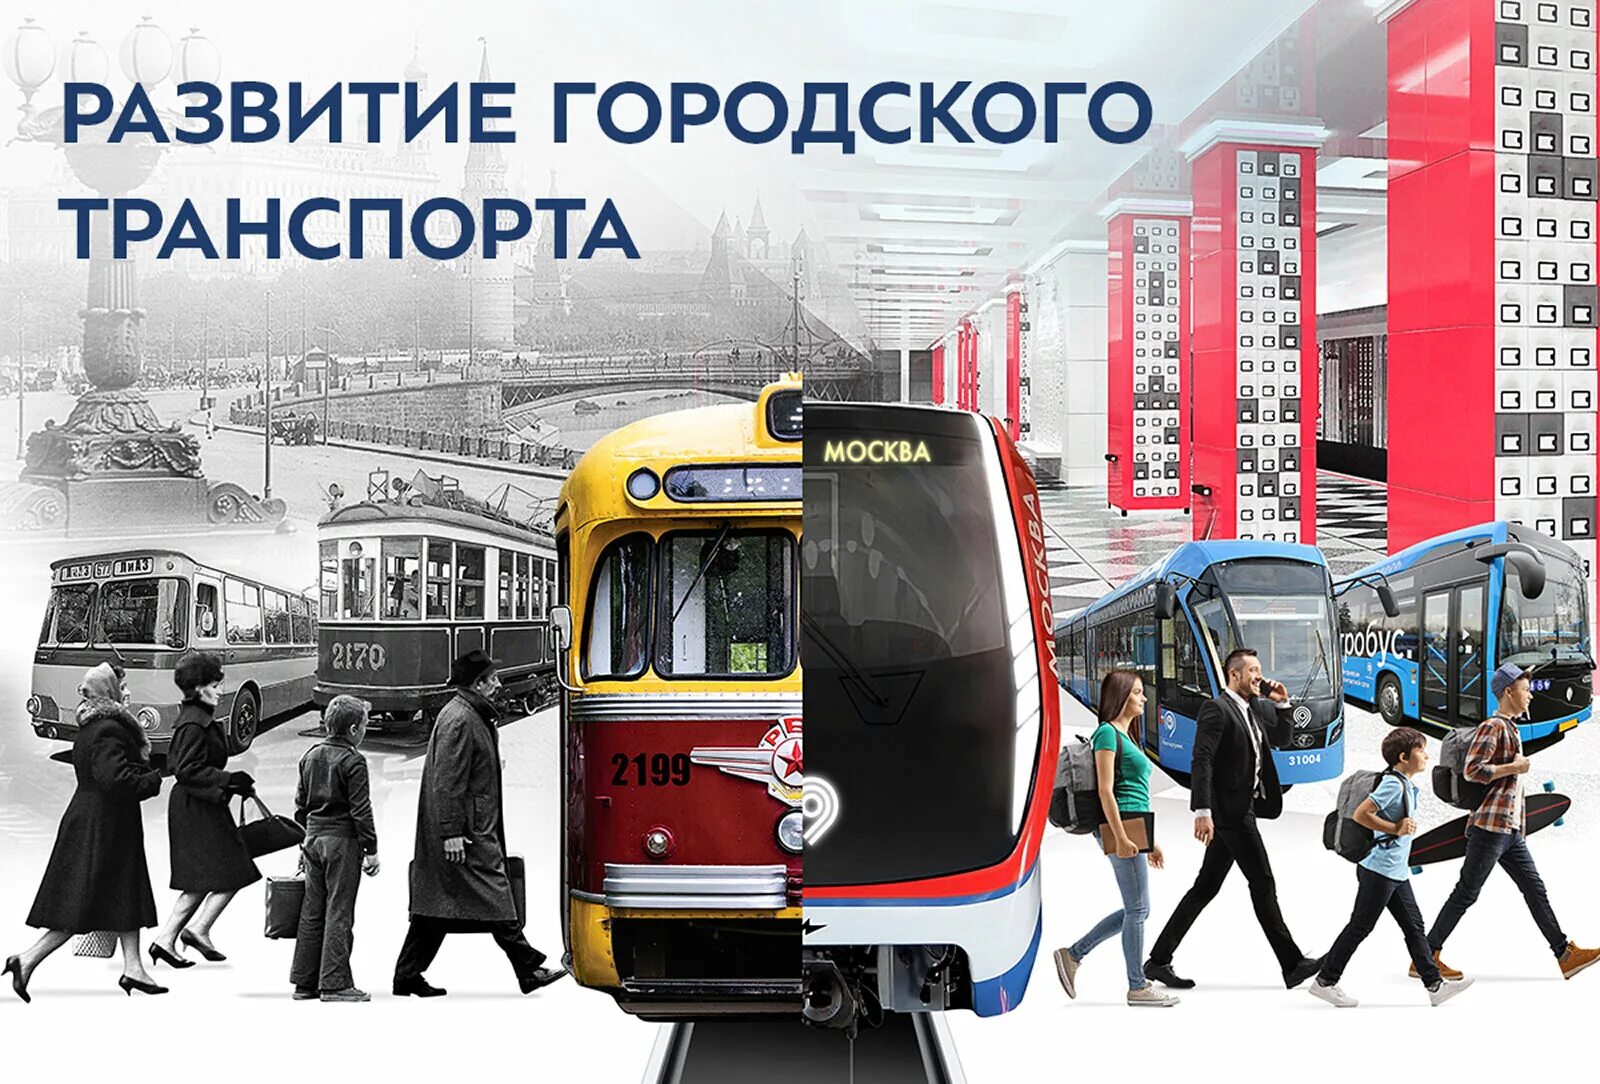 Городской транспорт. Общественный транспорт Москвы. Развитие городского транспорта. Развитый общественный транспорт.